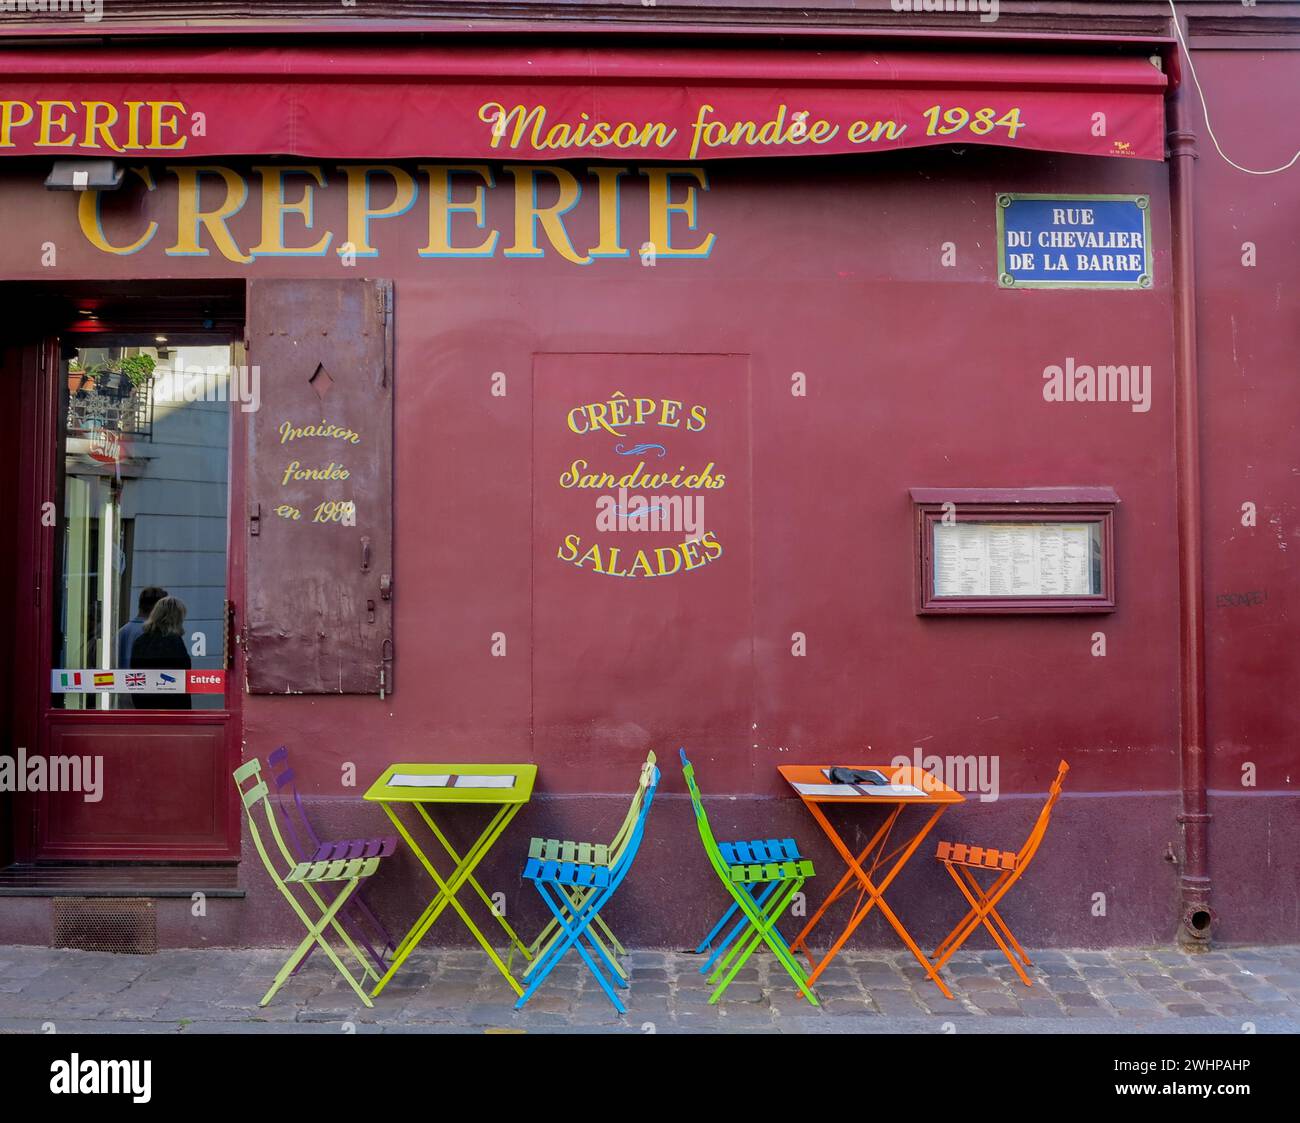 La vita quotidiana nelle strade di Parigi Foto Stock